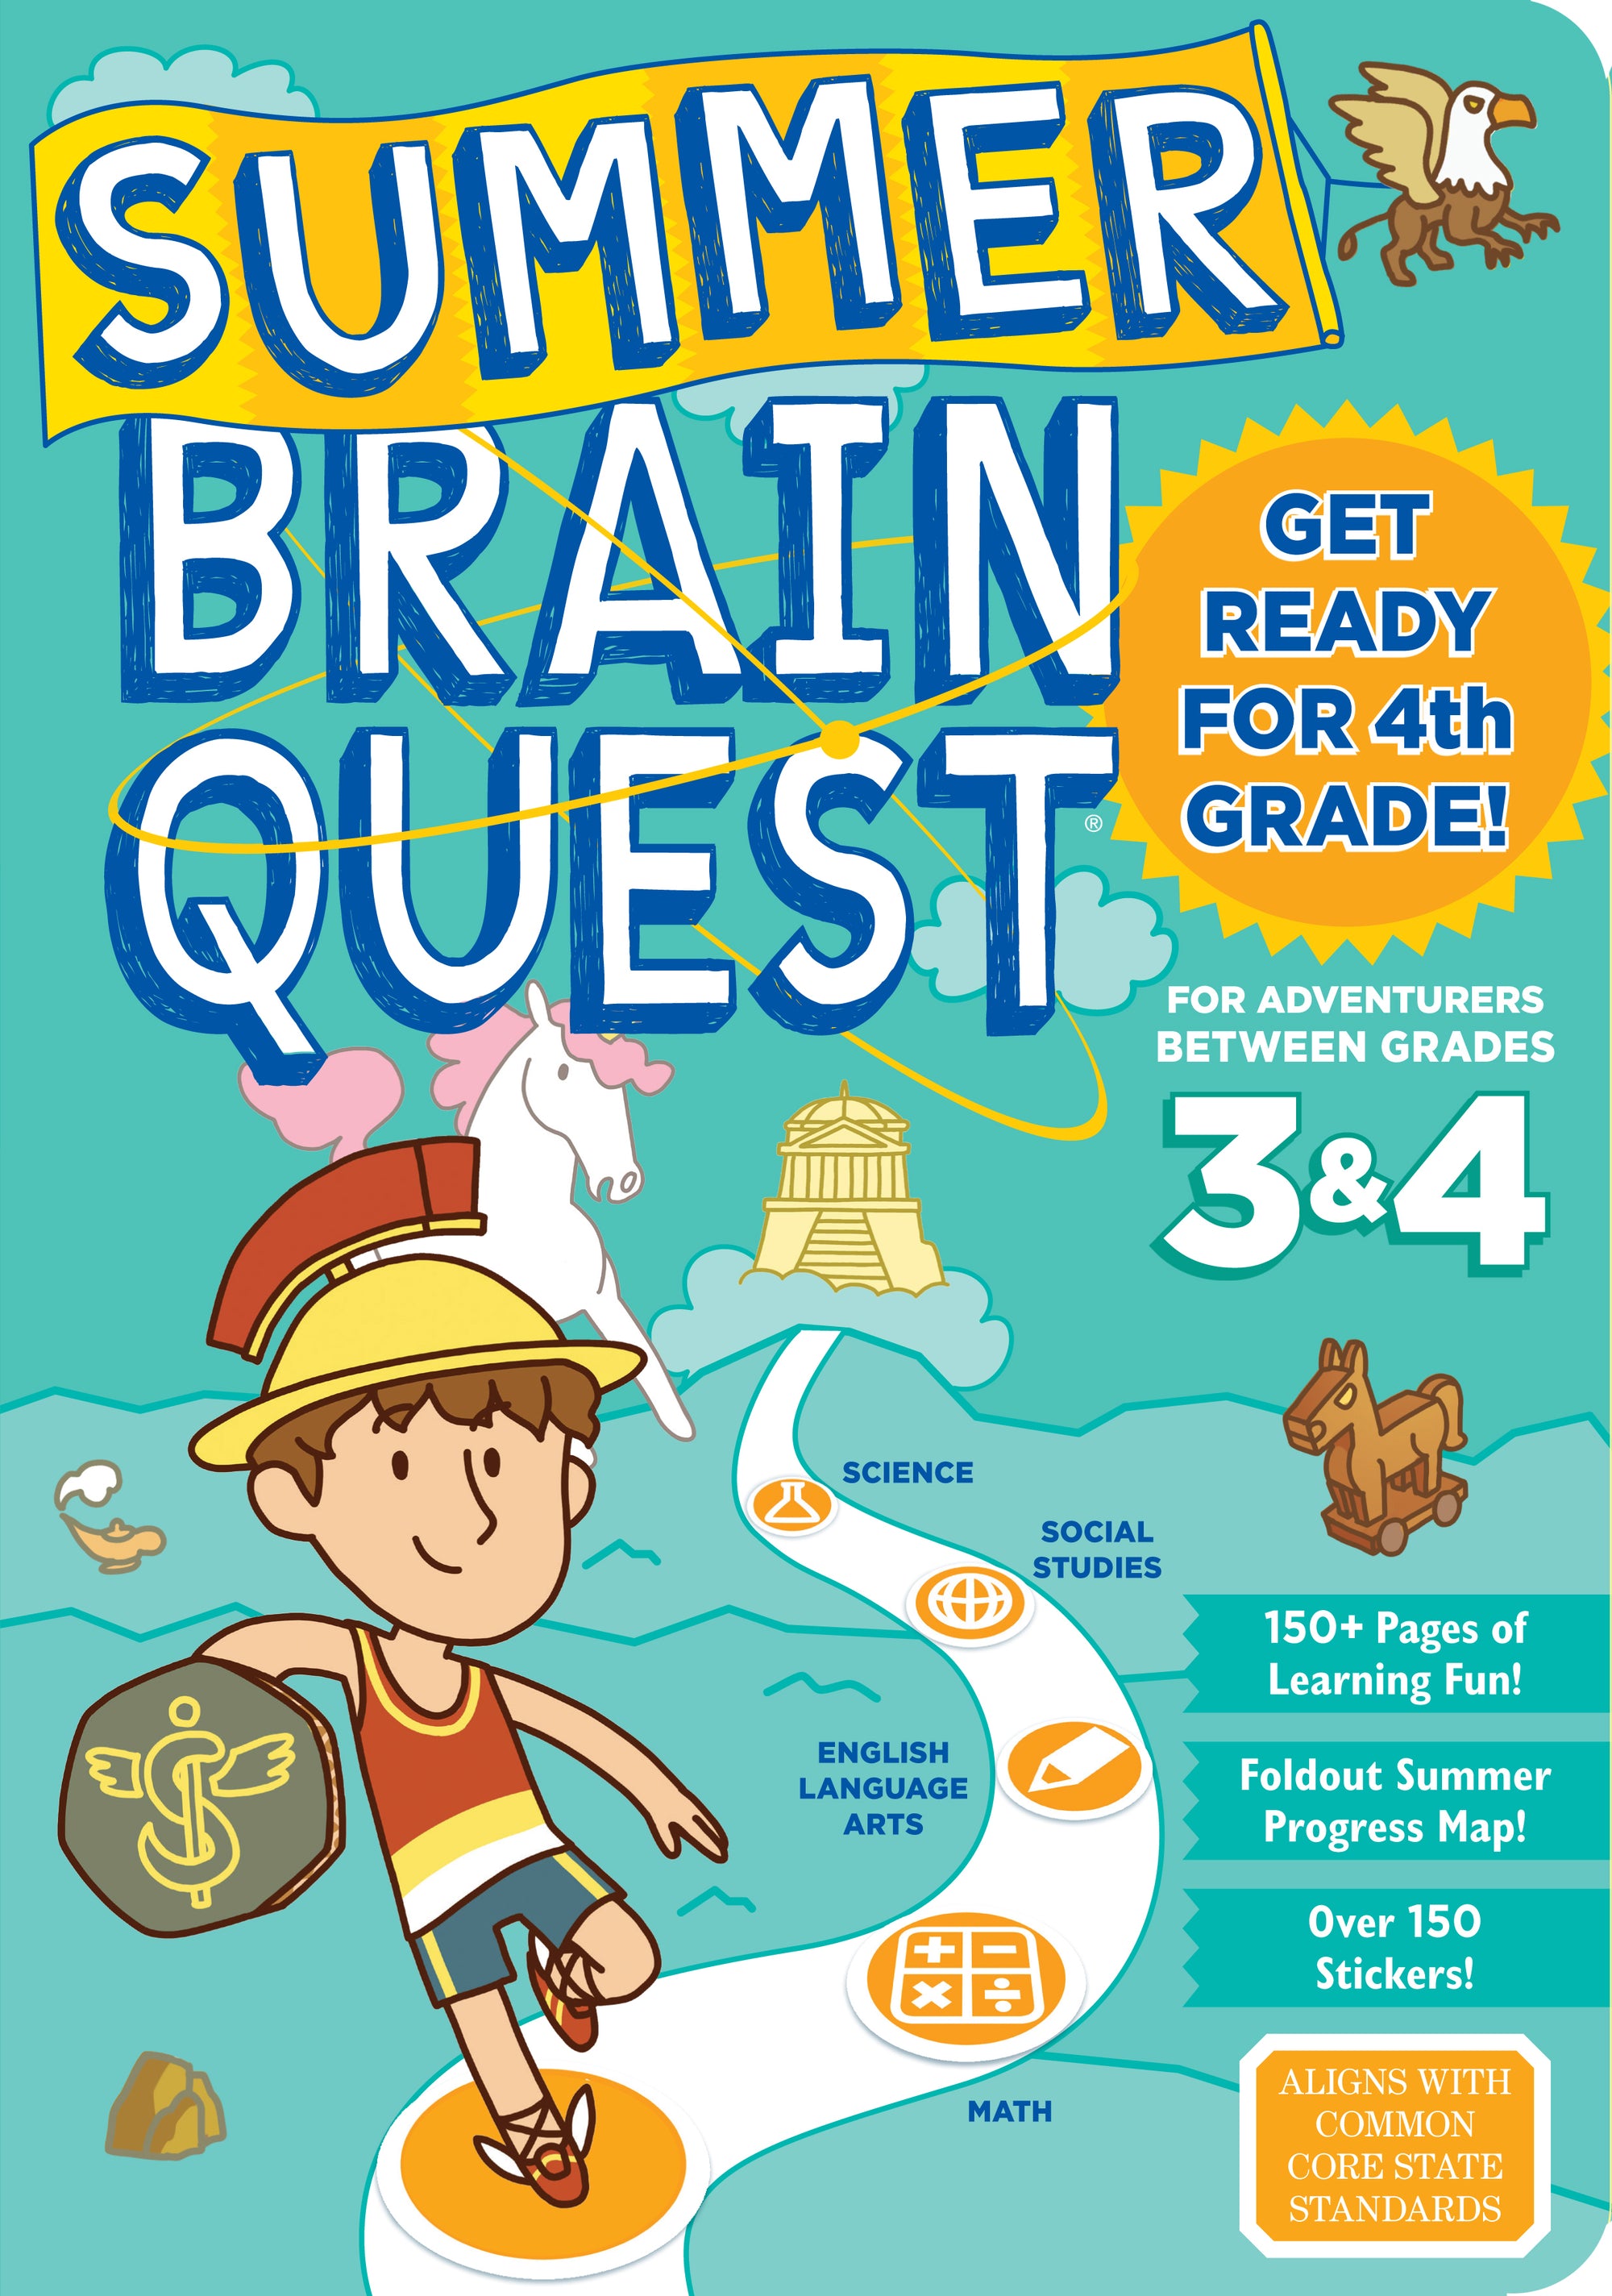 Brain Quest Summer Brain Quest: Between Grades 3 & 4